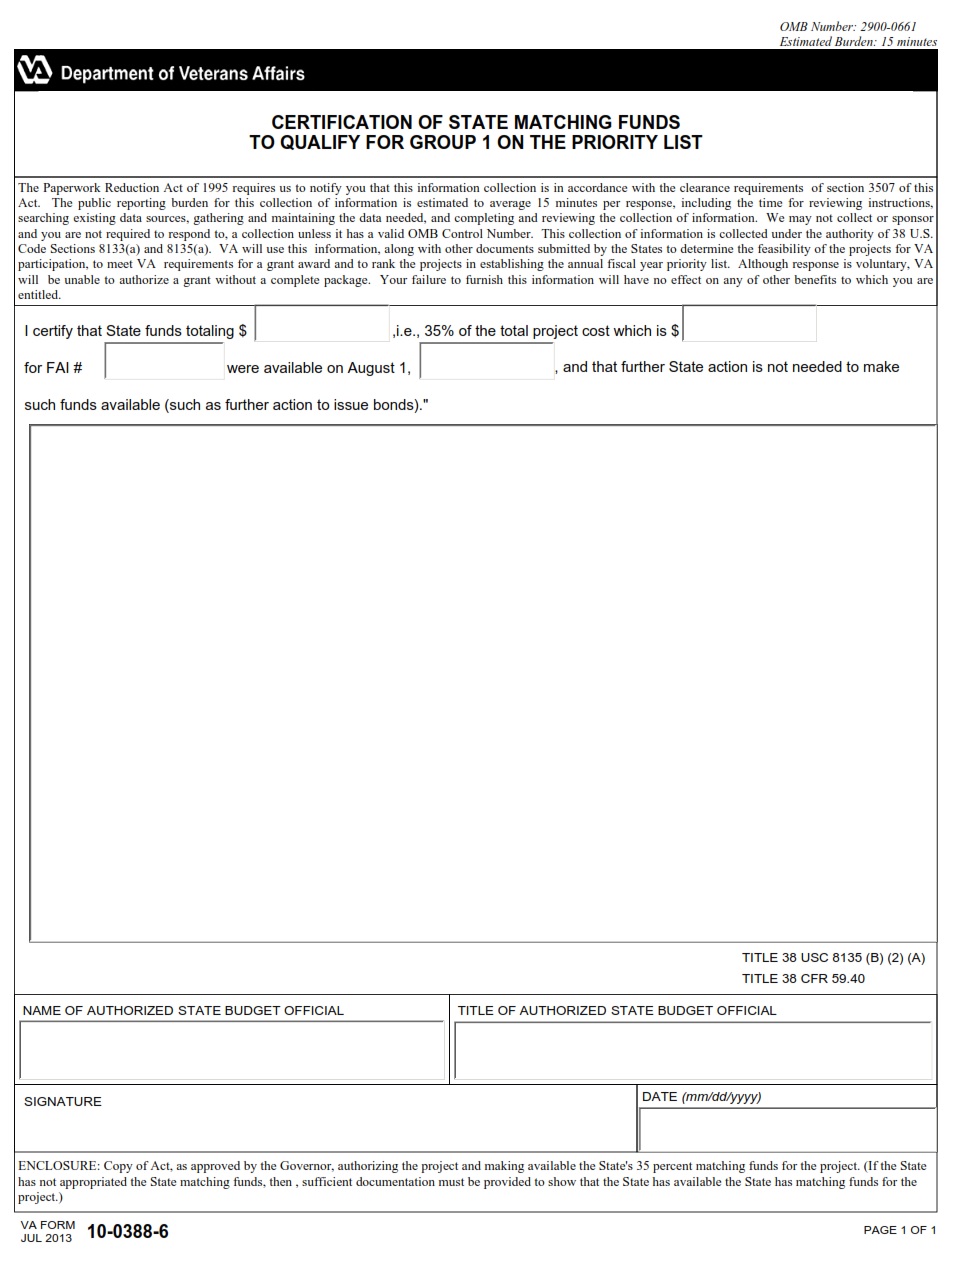 VA Form 10-0388-6